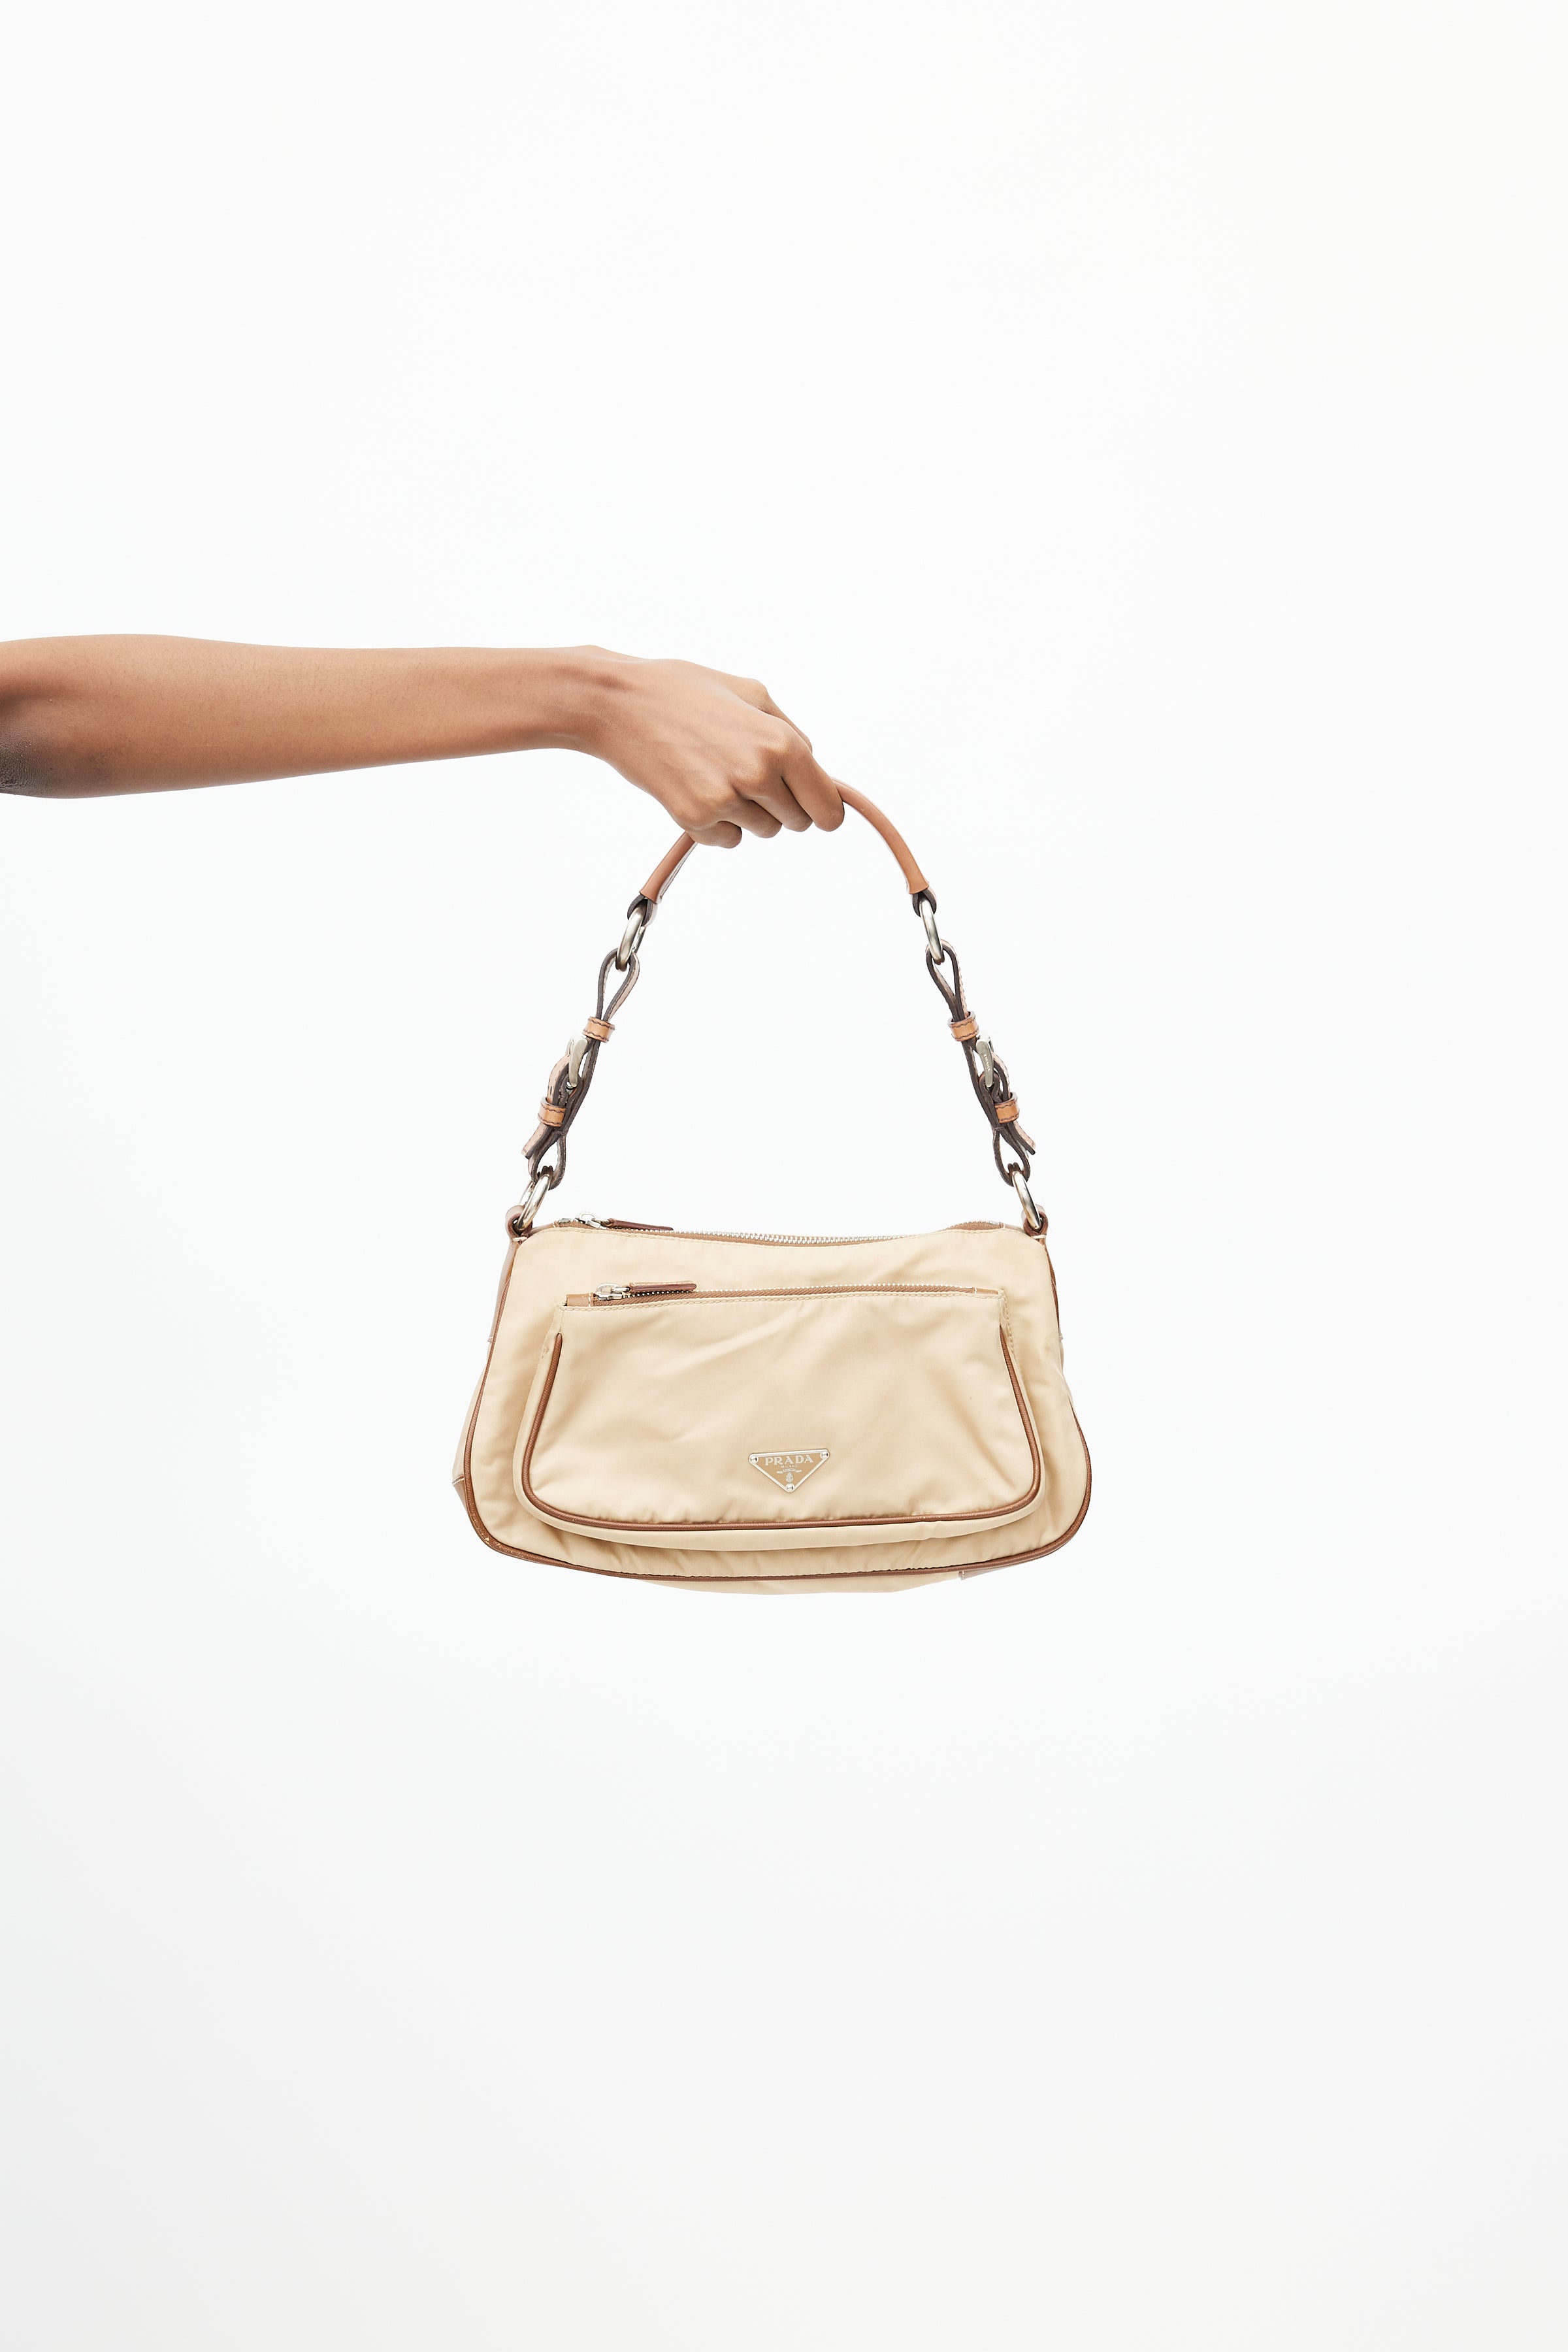 Prada // Light Brown Saffiano Leather Shoulder Bag – VSP Consignment